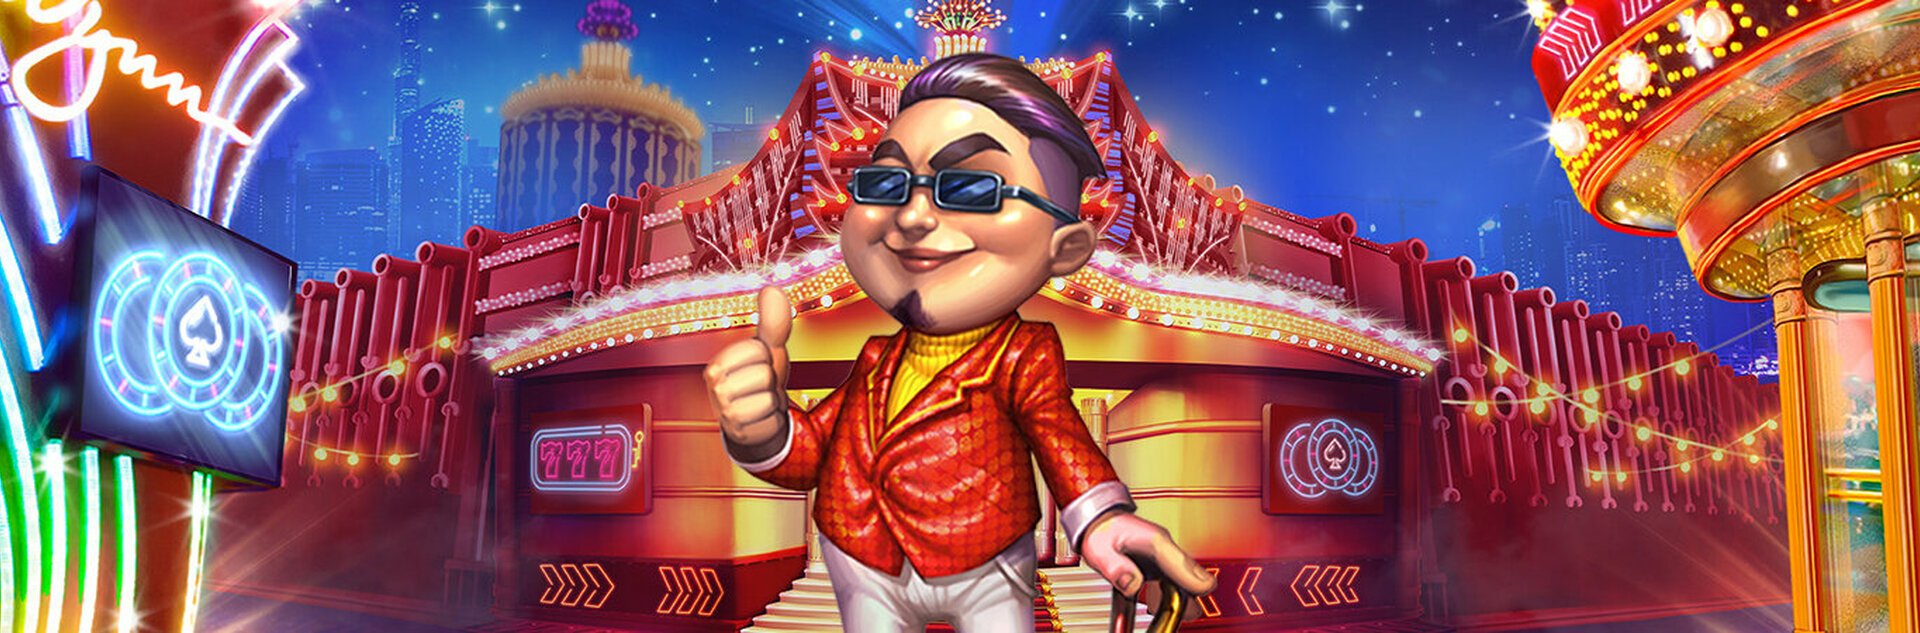 Play Mr. Macau Free Slot